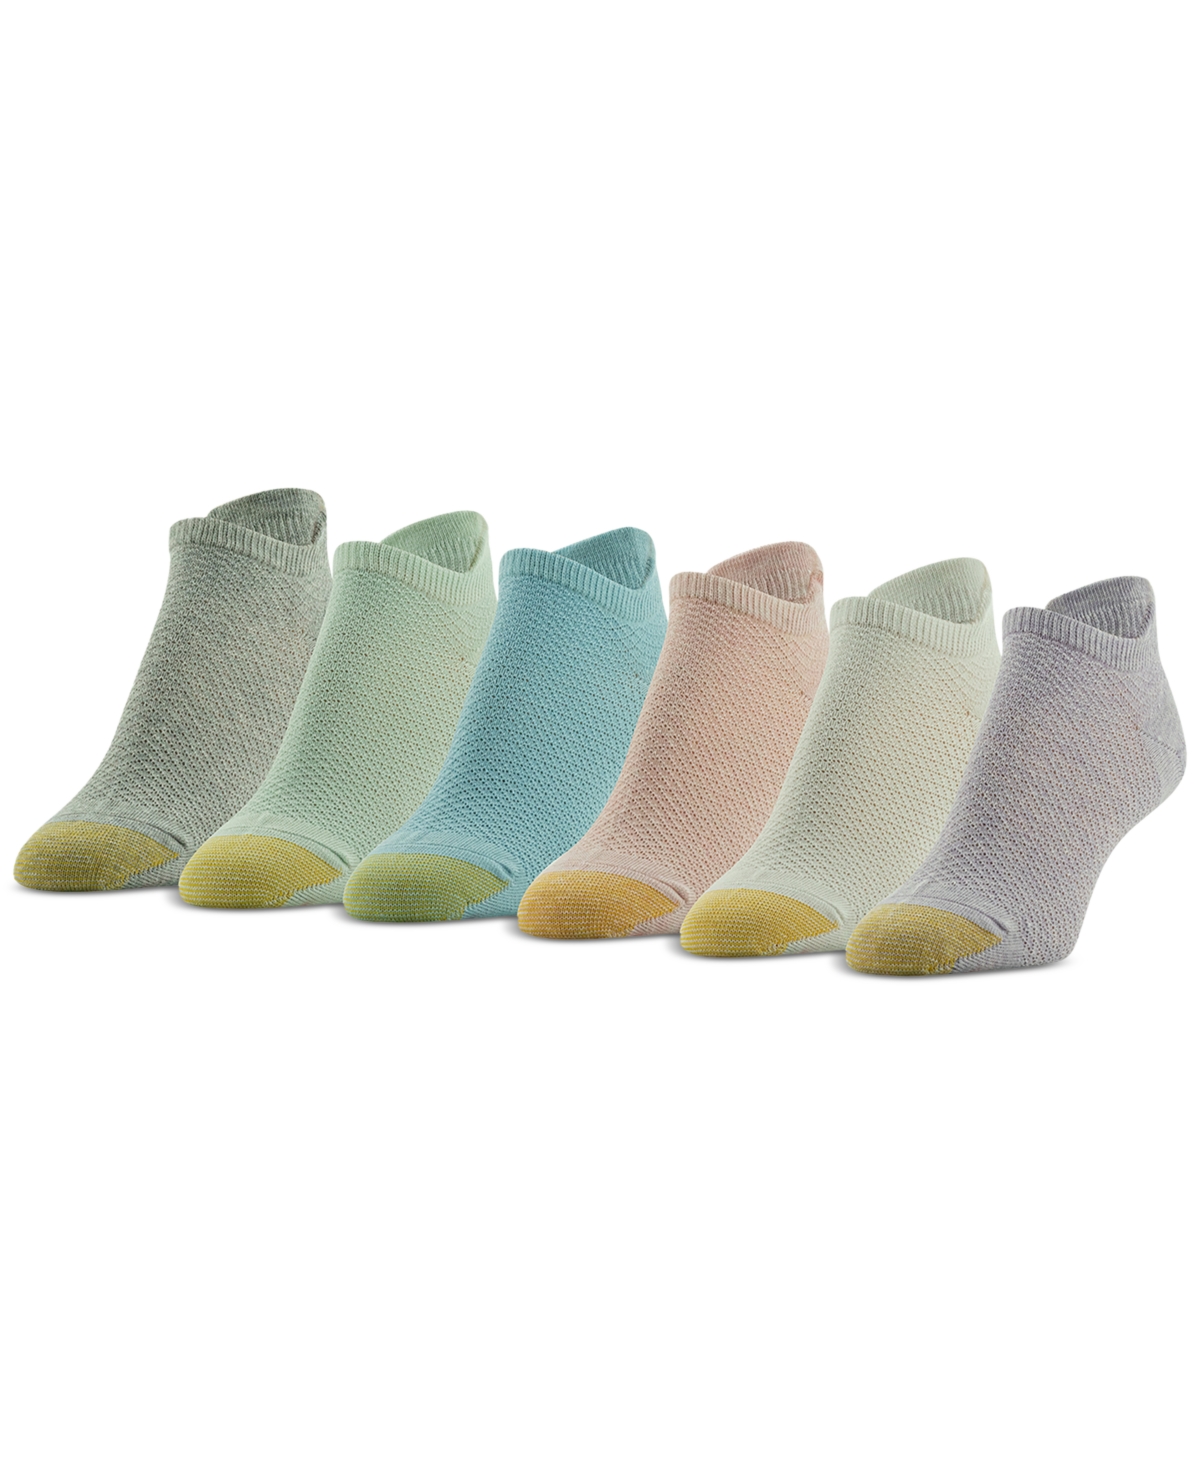 Women's 6-Pk. Henley Liner Socks - Assorted